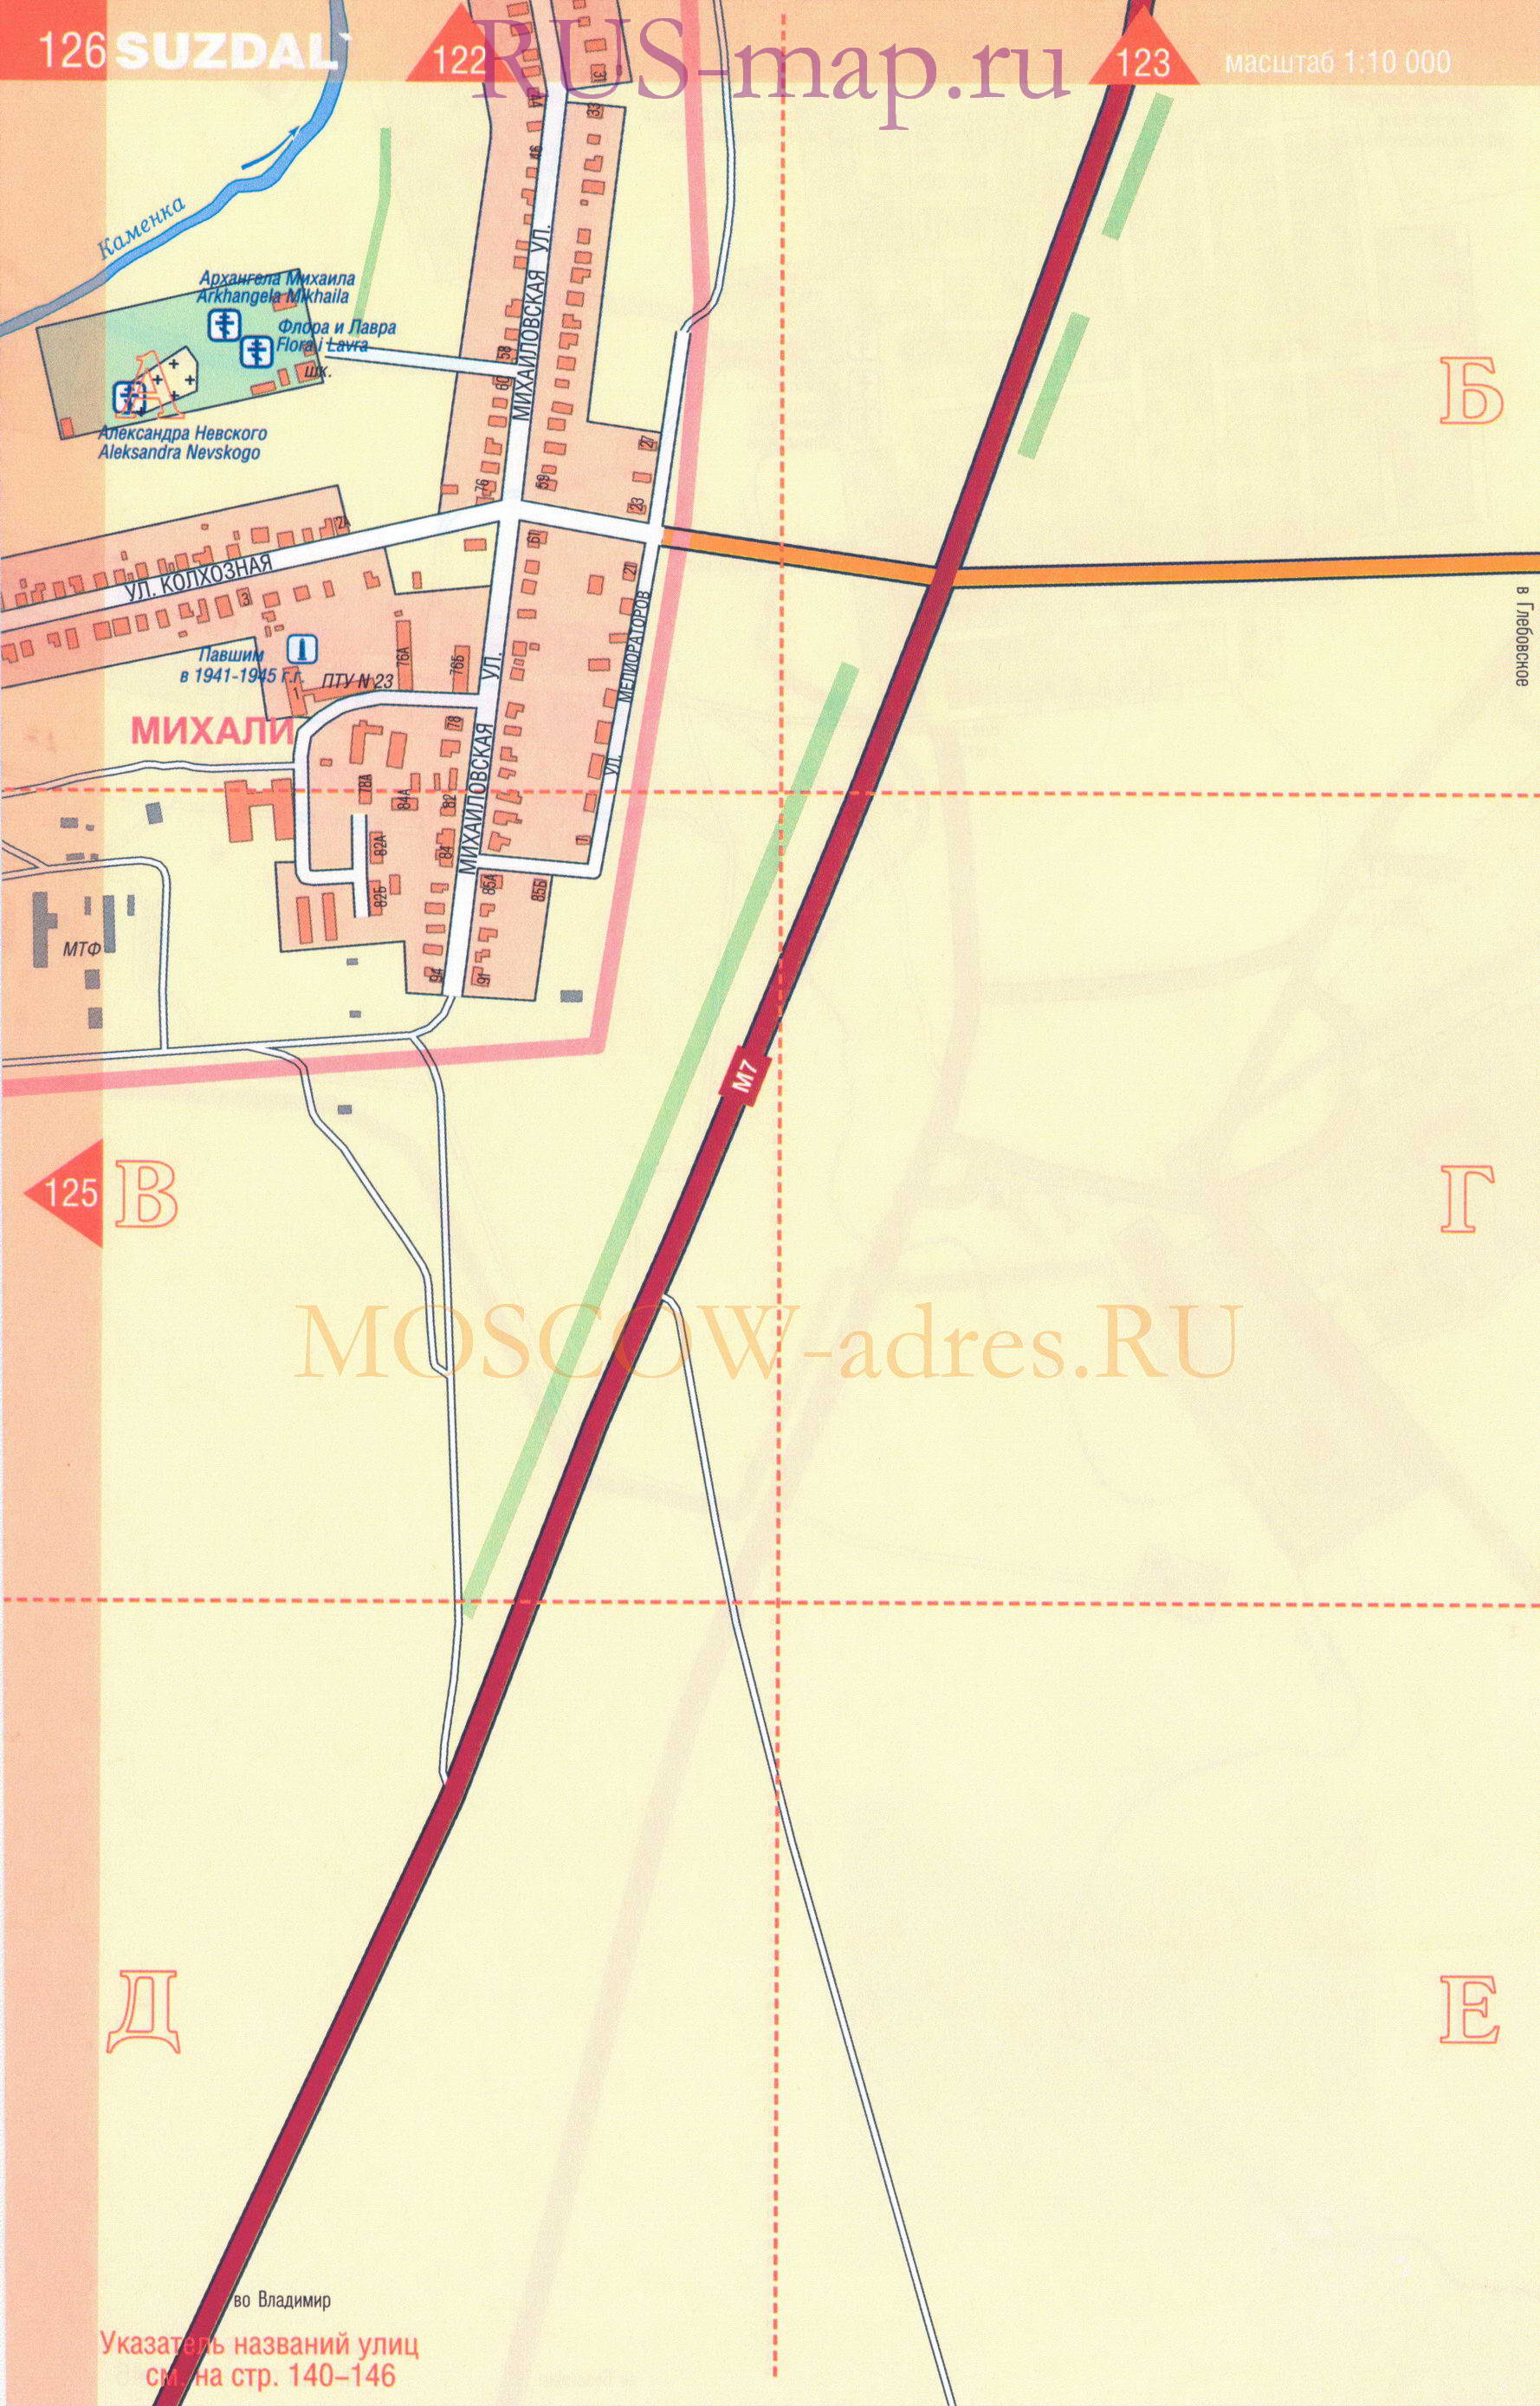 Суздаль. Крупномасштабная карта города Суздаль масштаба 1см:100м, показаны все церкви, музеи, гостиницы, C2 - 